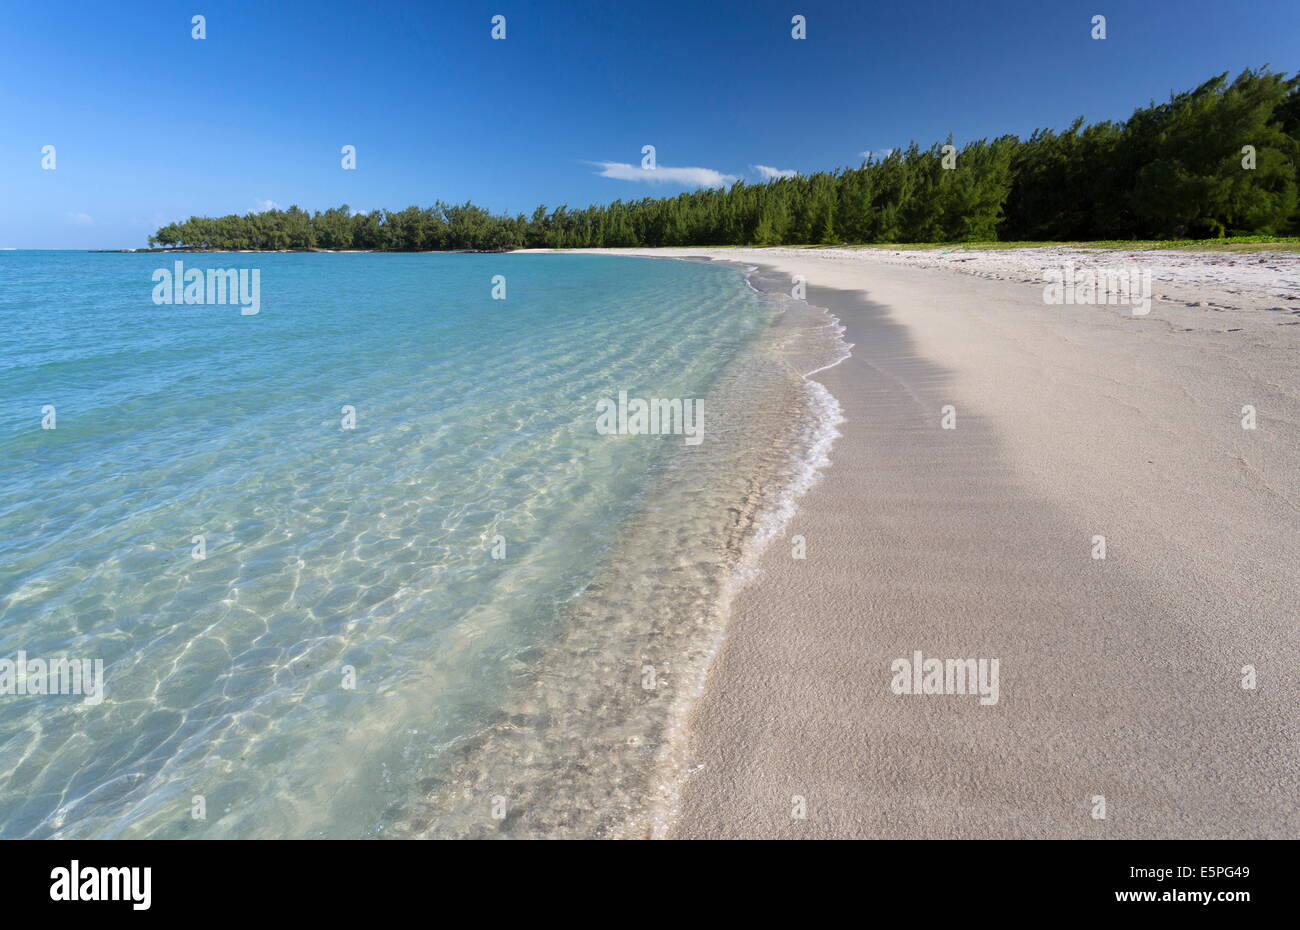 Idyllischer Strand-Szene mit blauem Himmel, türkisblauem Meer und weichen Sand, Ile Aux Cerfs, Mauritius, Indischer Ozean, Afrika Stockfoto